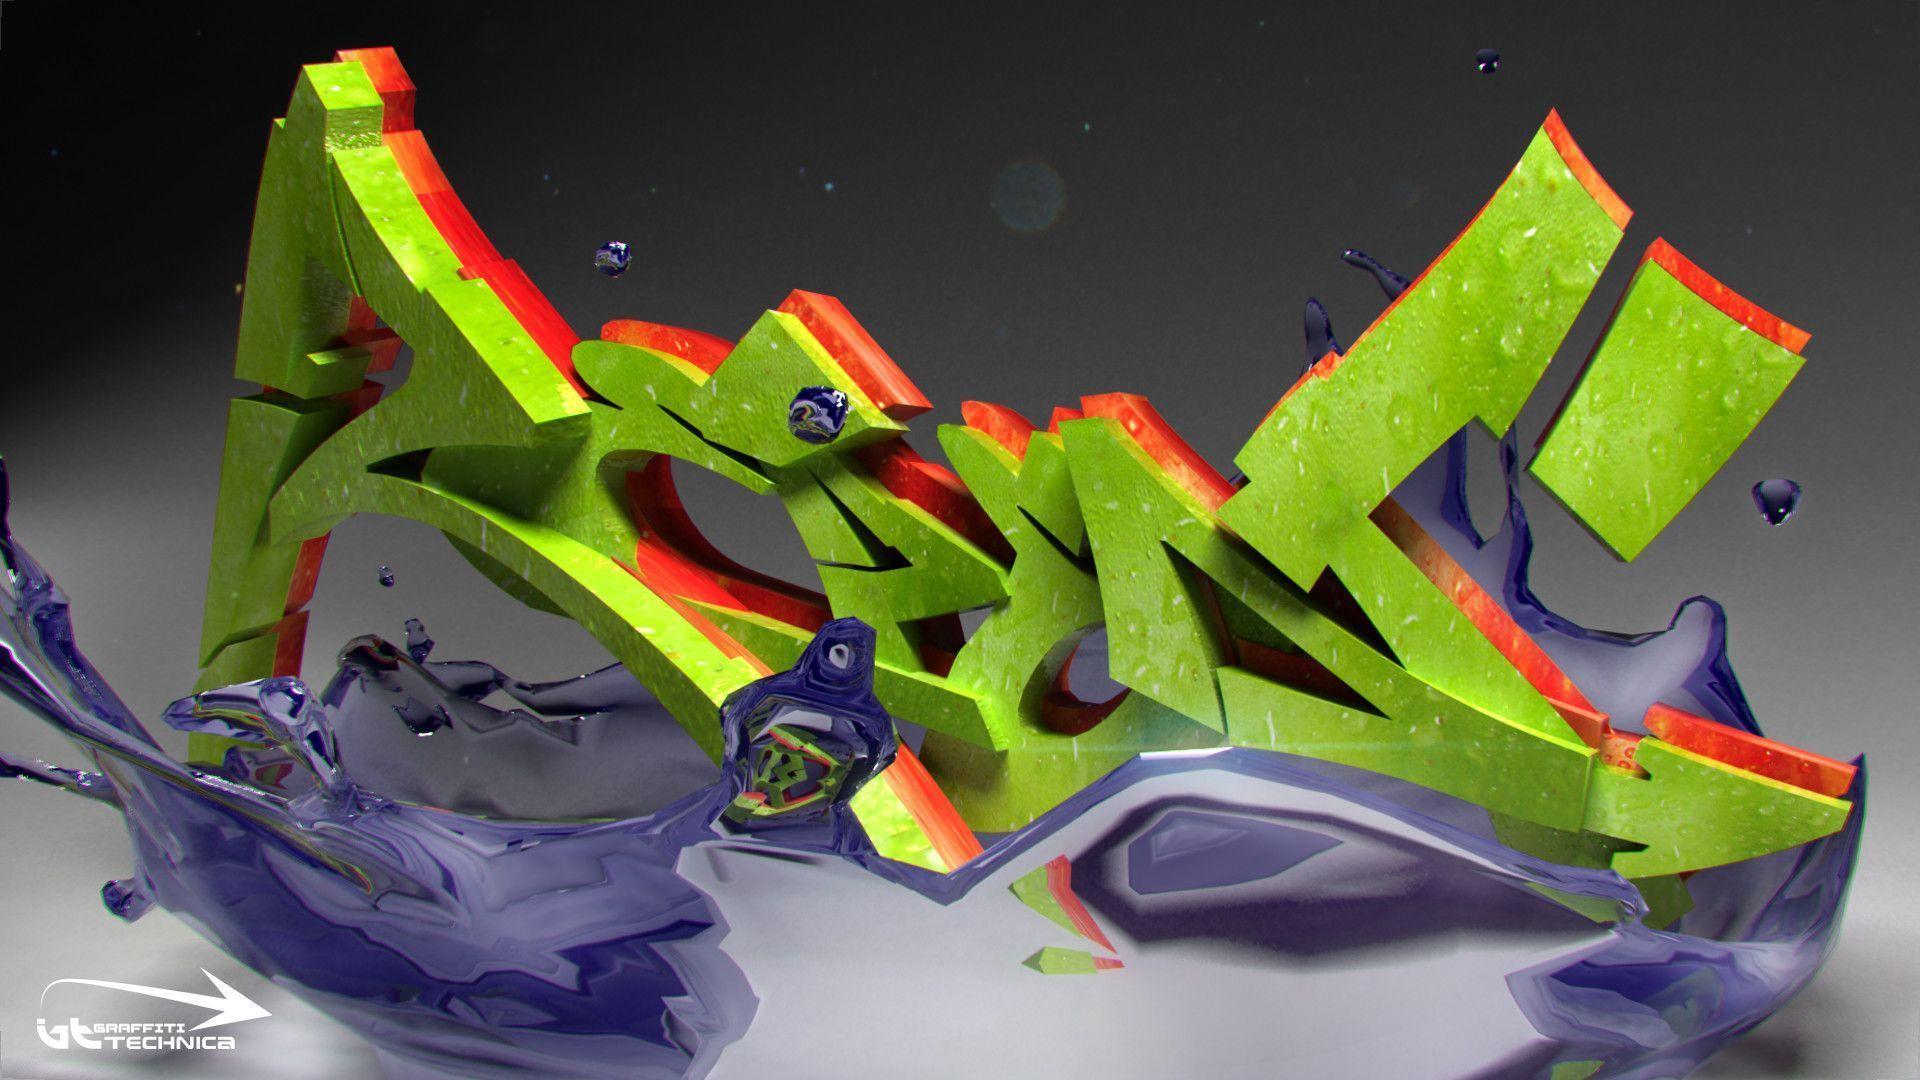 Graffiti 3D Green Wallpaper Wide Best 3D Graffiti Image. Part